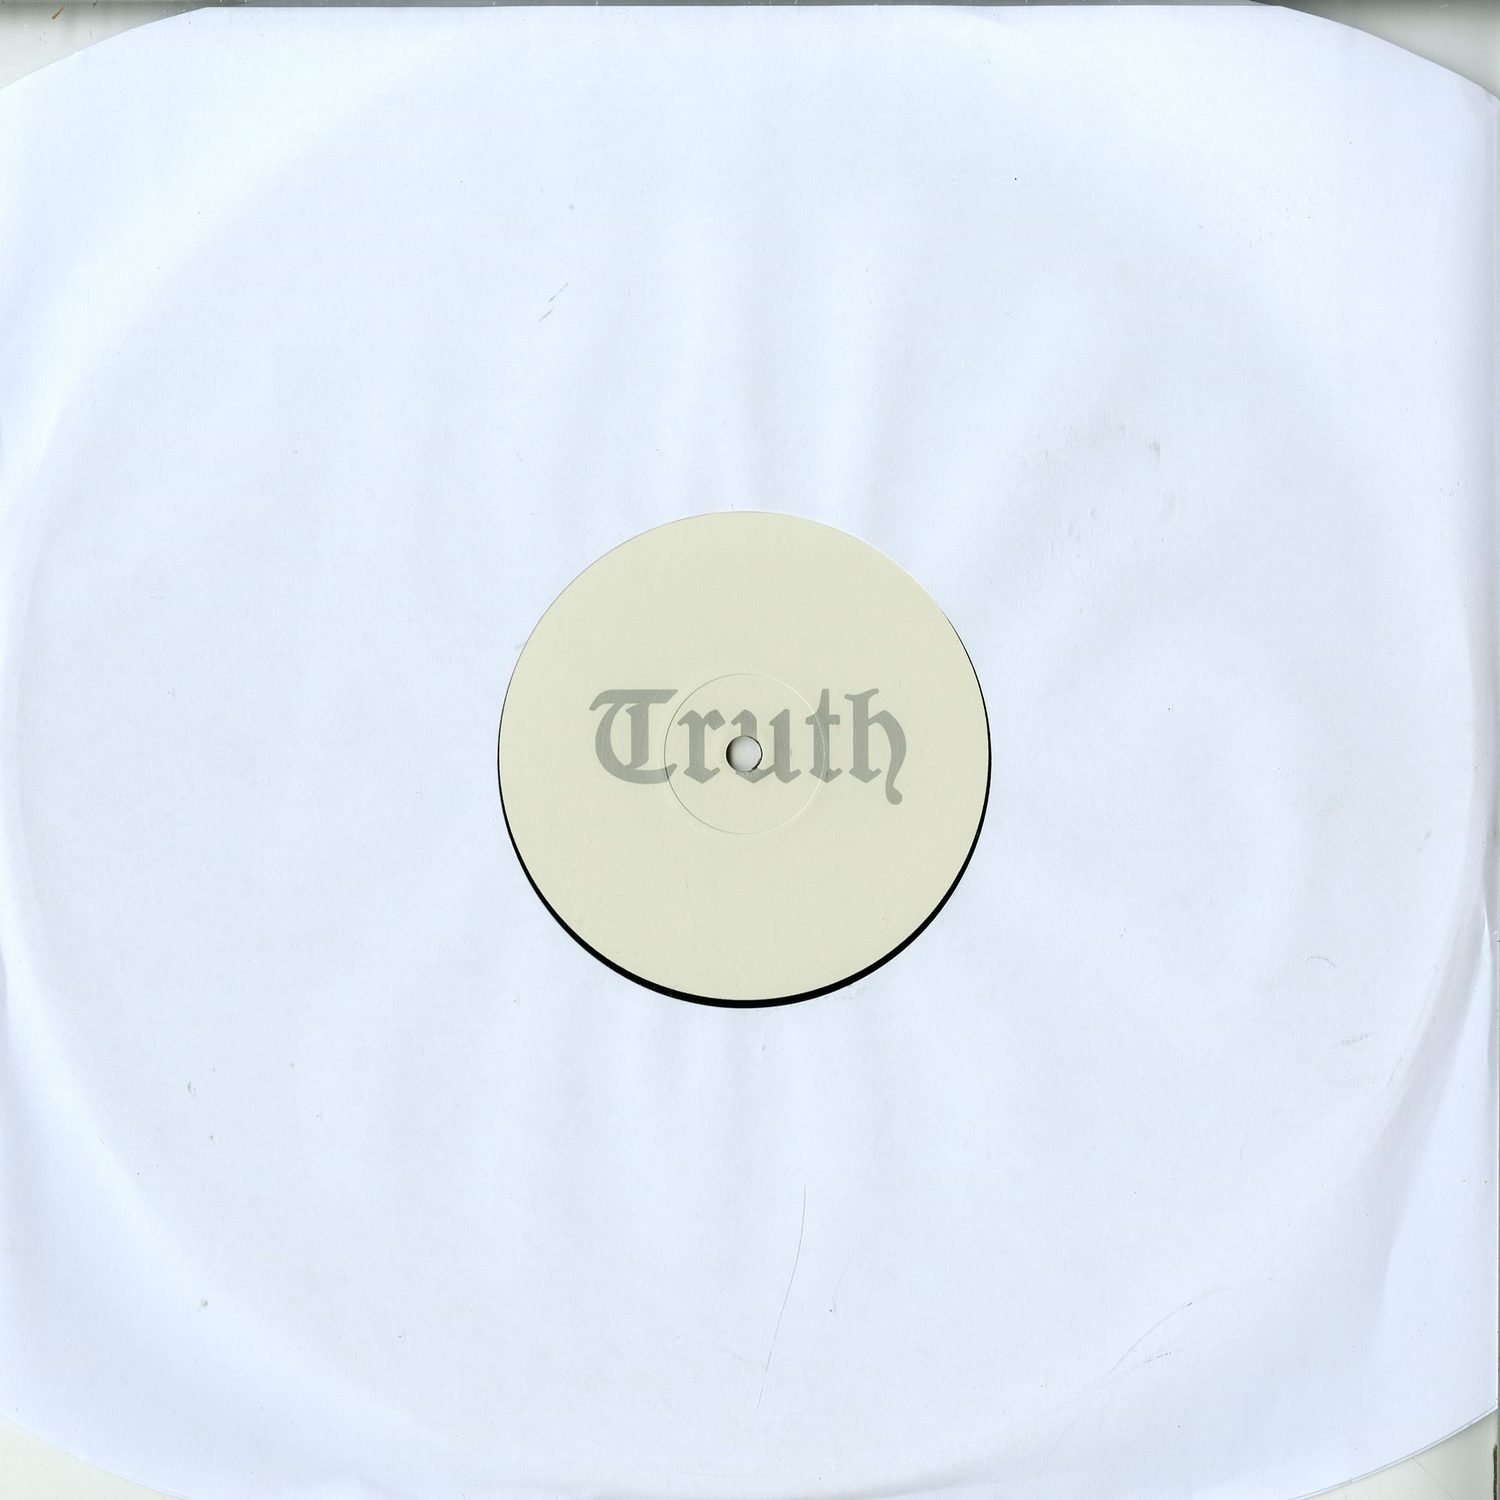 Lootbeg - TRUTH001 EP 